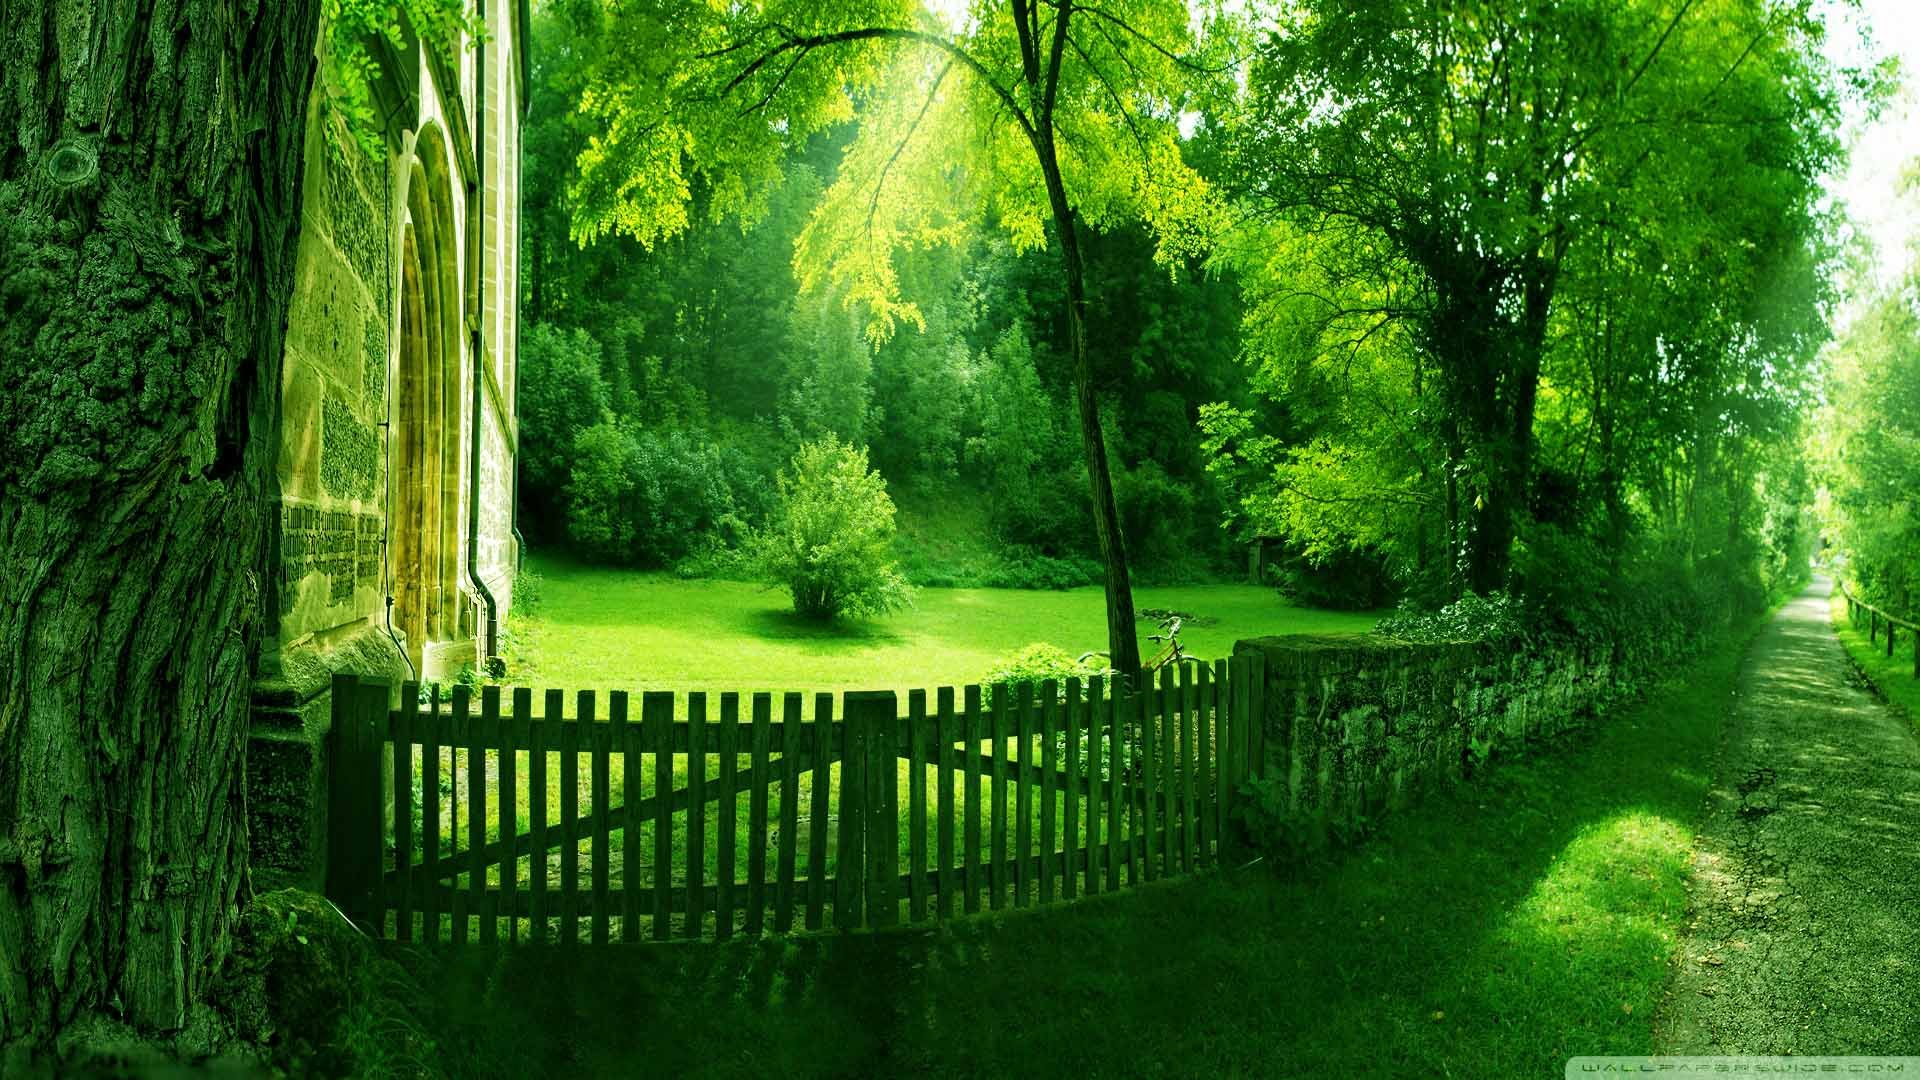 Green Nature wallpaper | 1920x1080 | 582710 | WallpaperUP